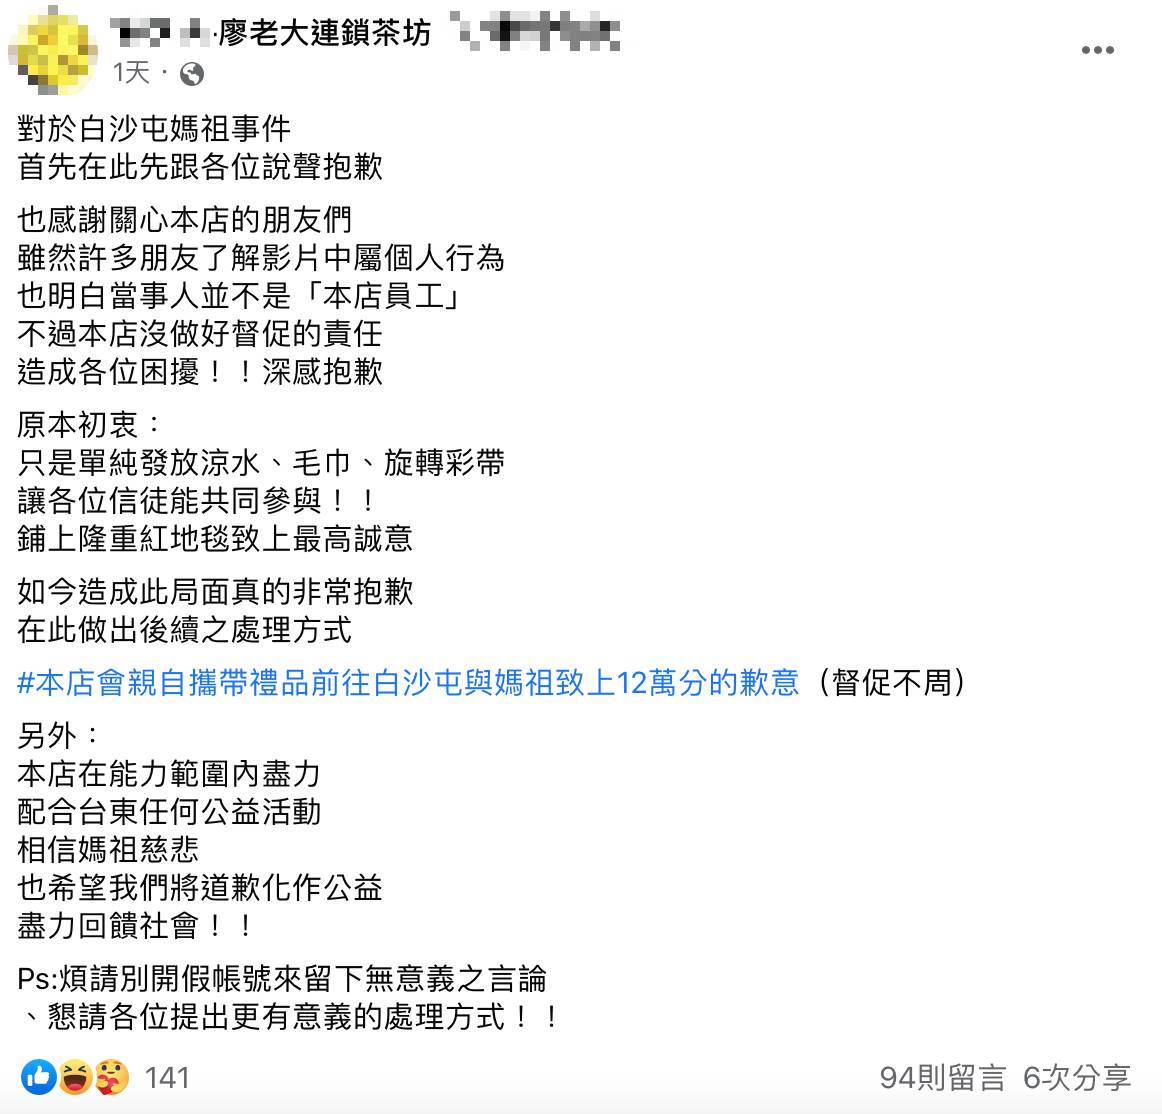 廖老大台東加盟店在臉書發文道歉